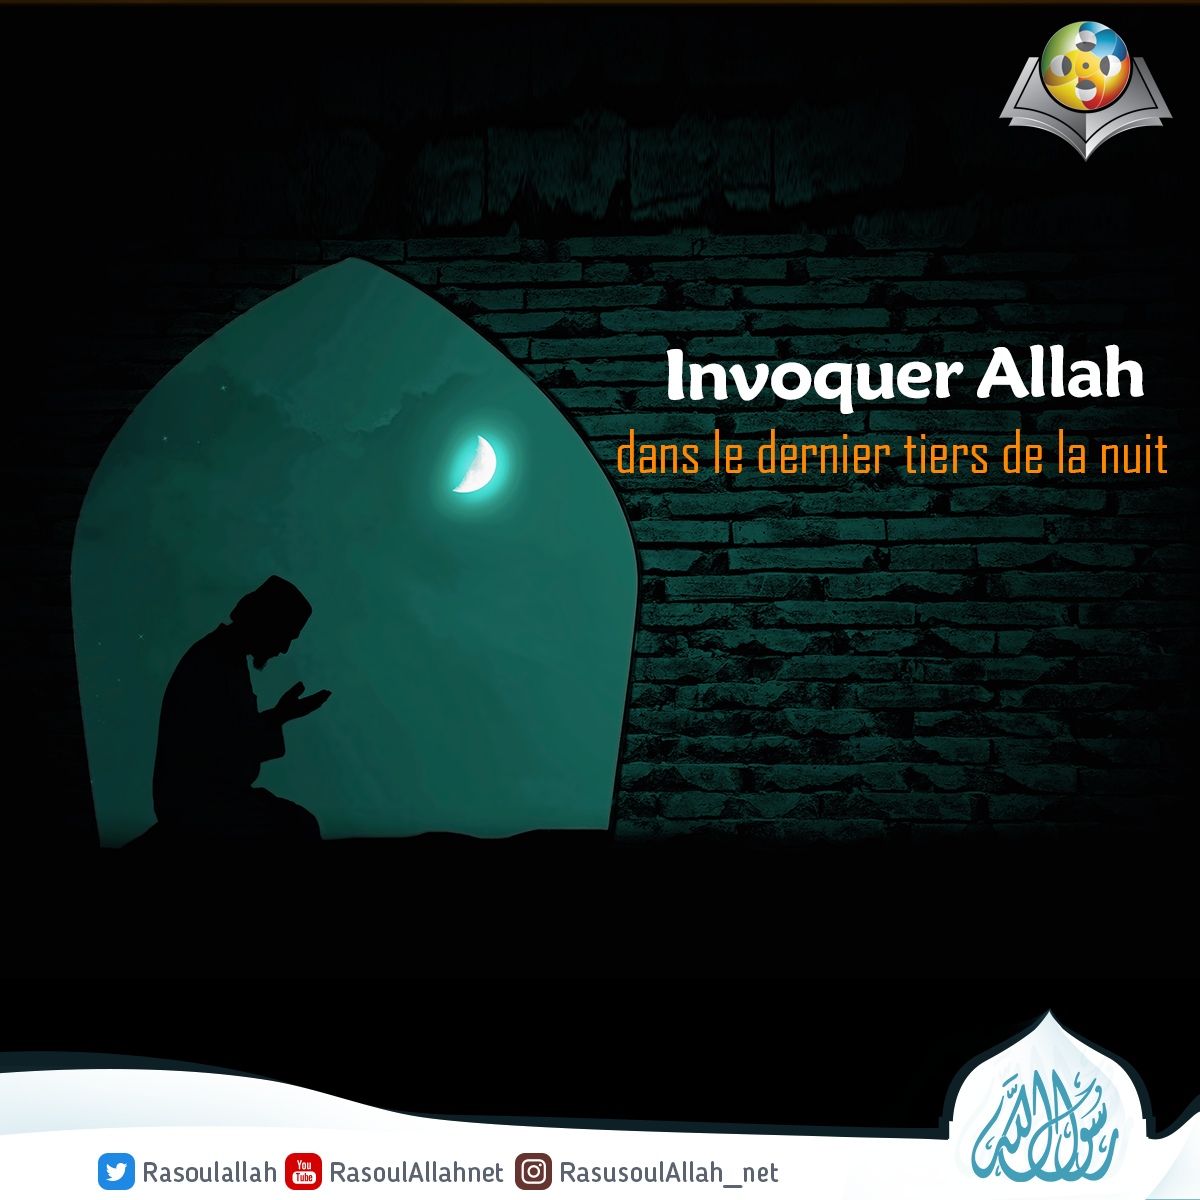 Invoquer Allah dans le dernier tiers de la nuit.